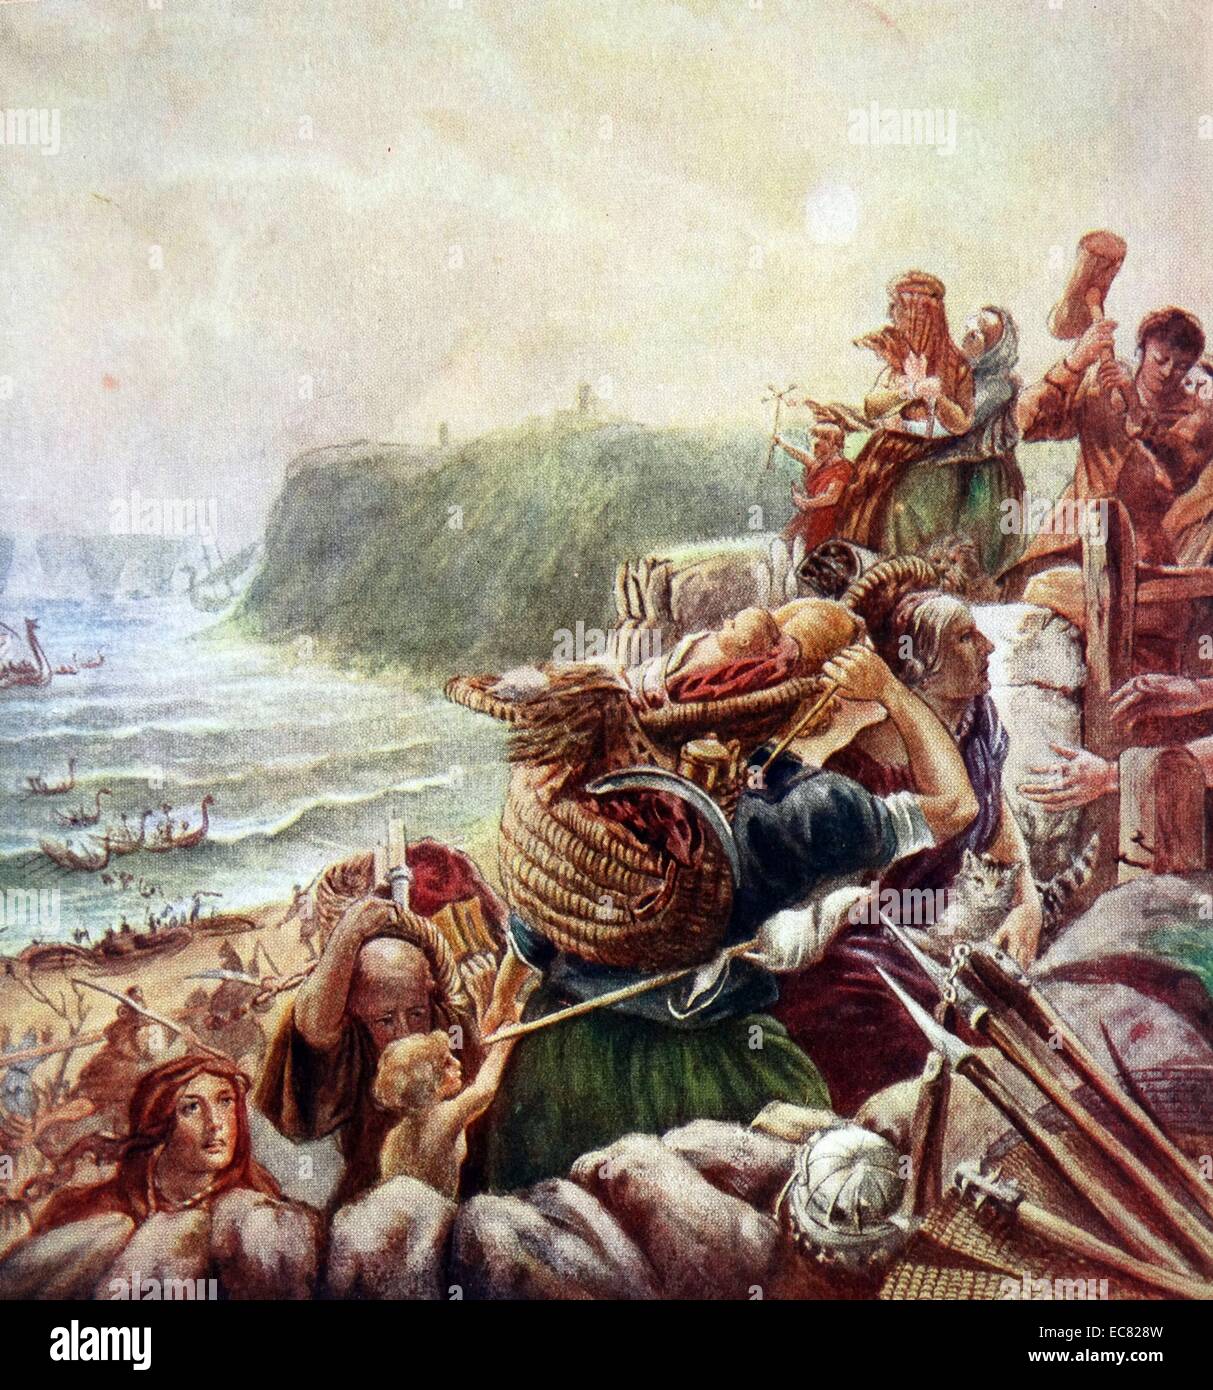 Los daneses aterrizar en Tynemouth en Inglaterra. Los refugiados huyen en inglés para la seguridad de una fortaleza construida apresuradamente. Siglo 10 AD Foto de stock